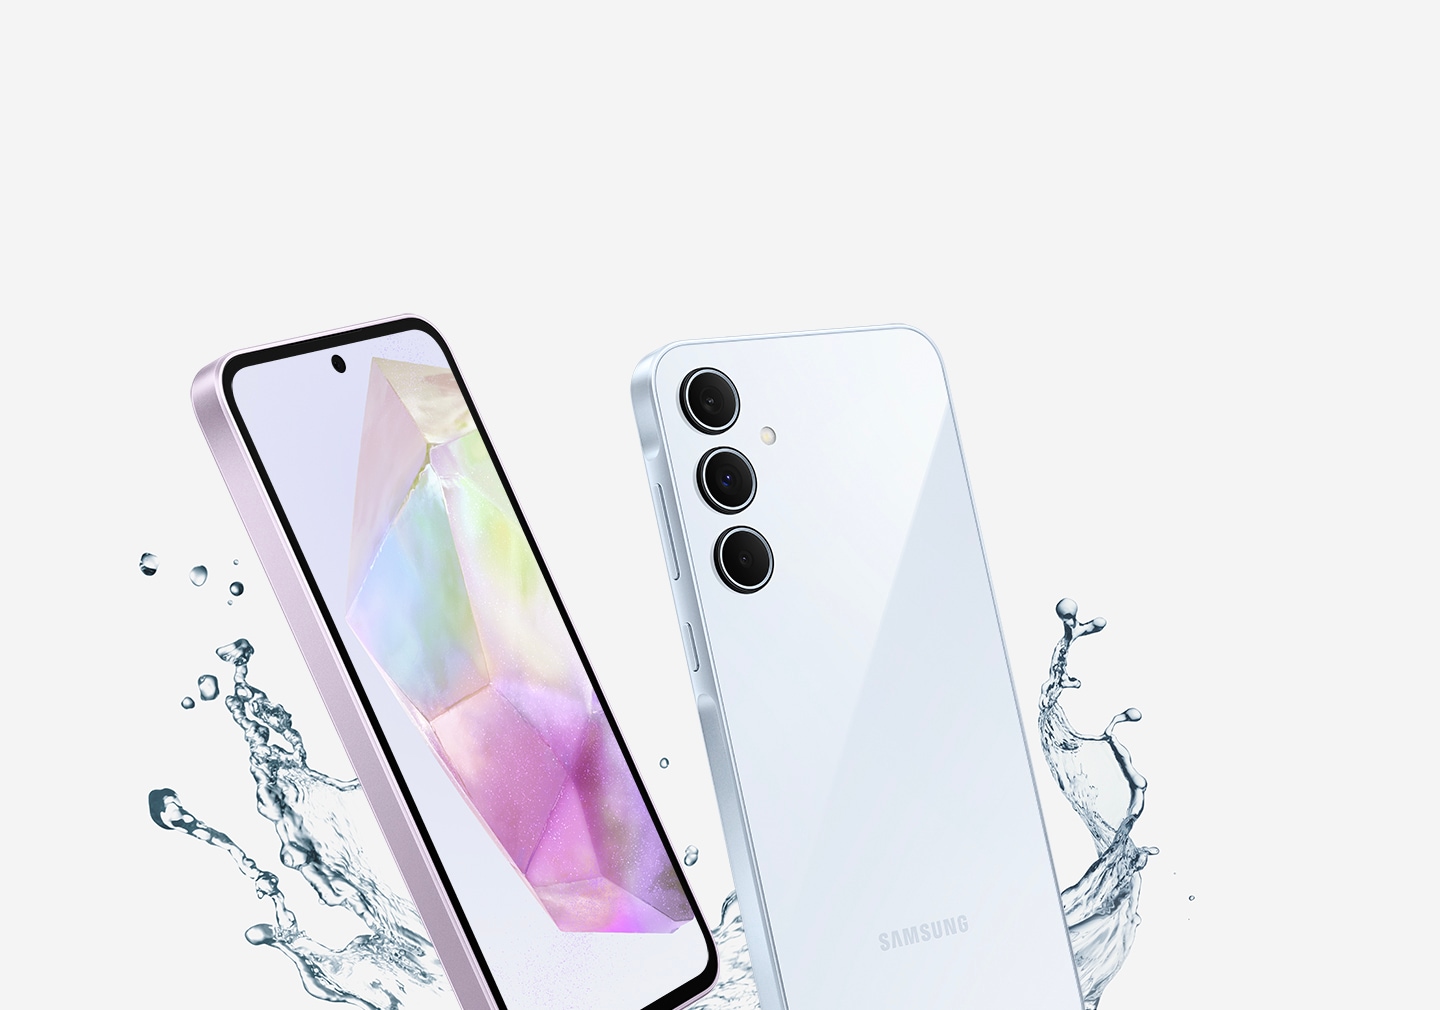 Два смартфона, показанные под углом, с брызгами воды вокруг них. На экране телефона отображаются градиентные обои, а на задней панели видна тройная камера.